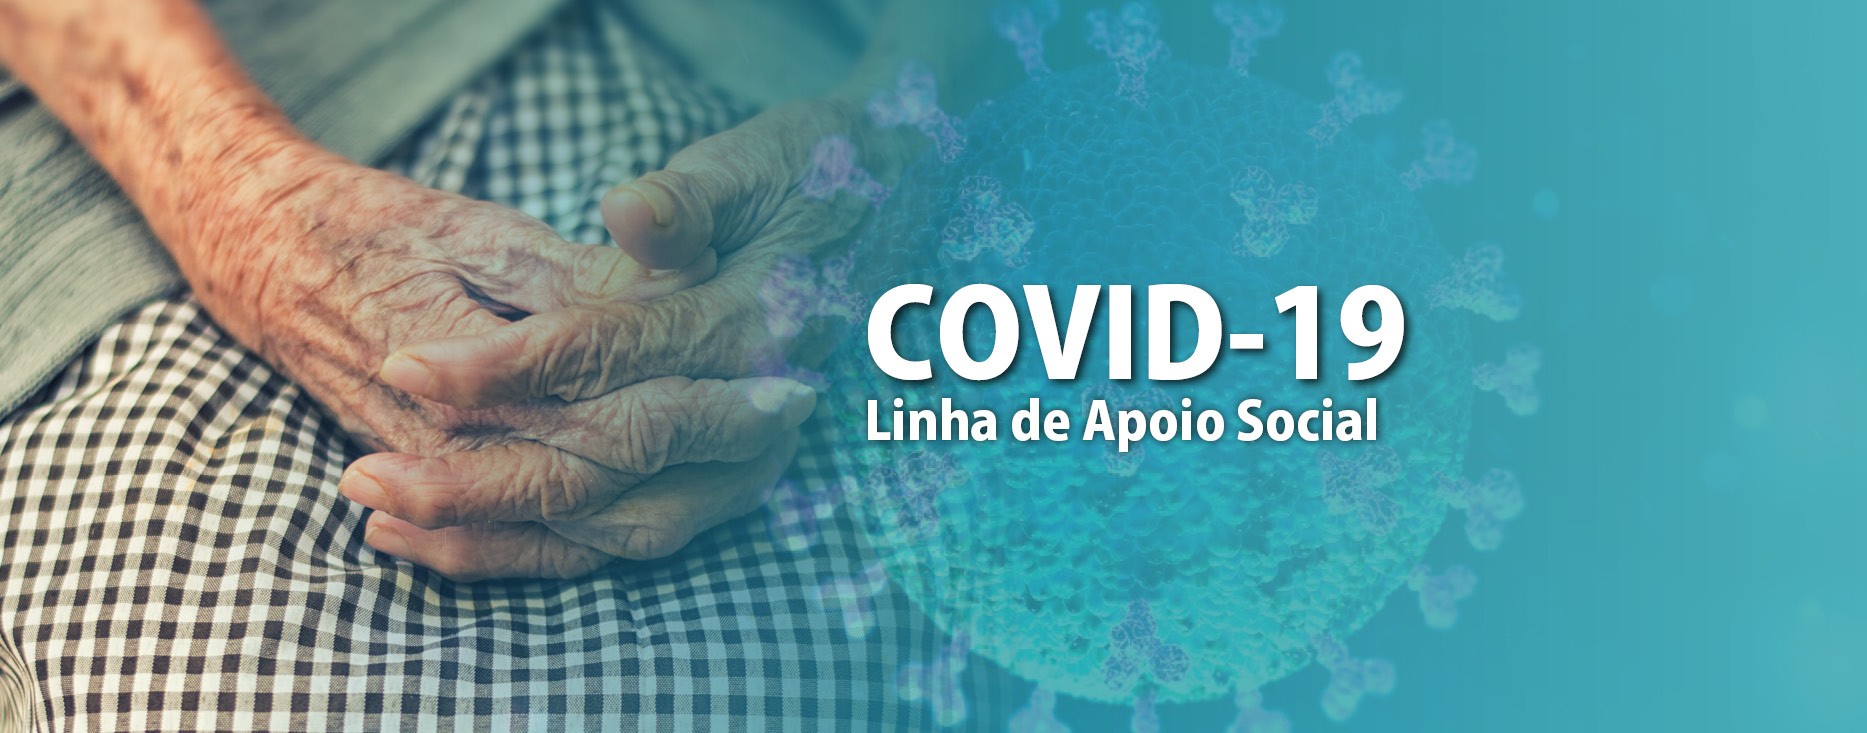 COVID-19 \\ Apoio social municipal em pleno funcionamento